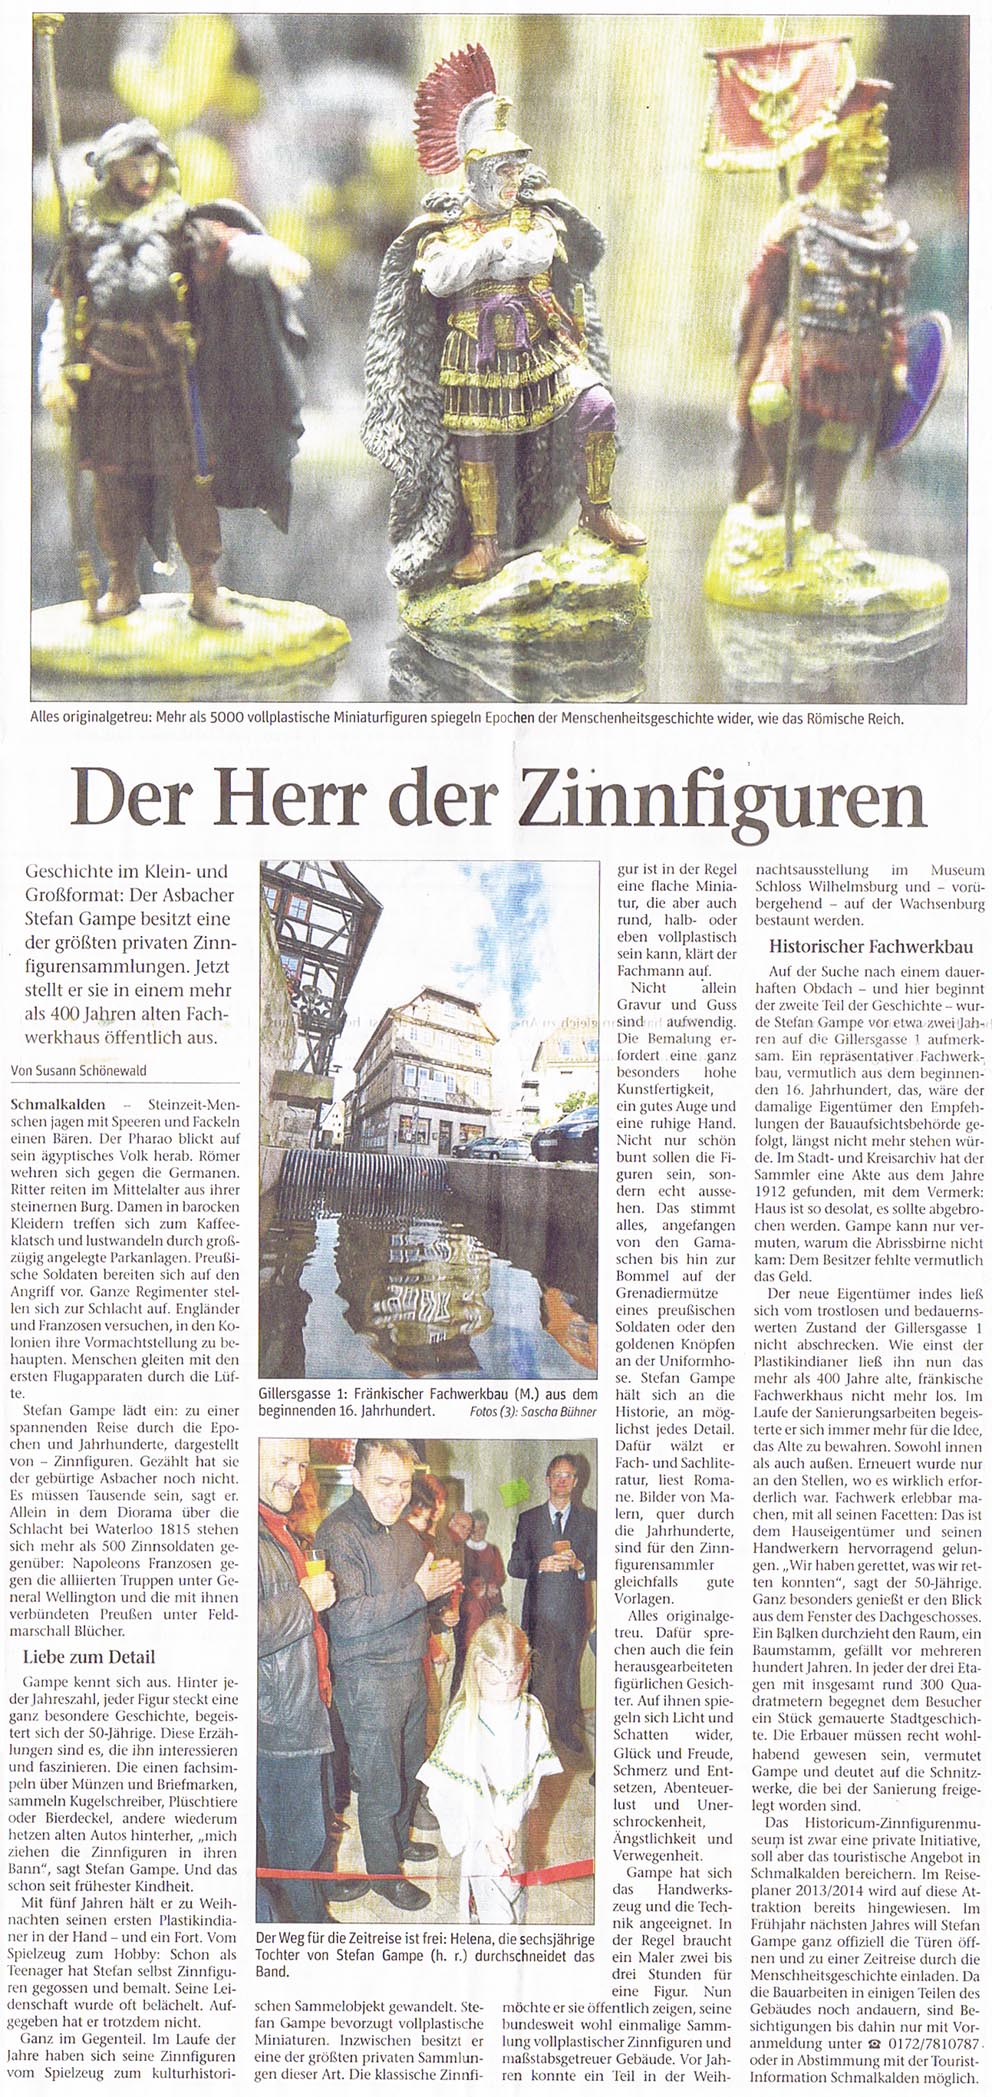 Zeitung HerrderZinnfig15Dez12